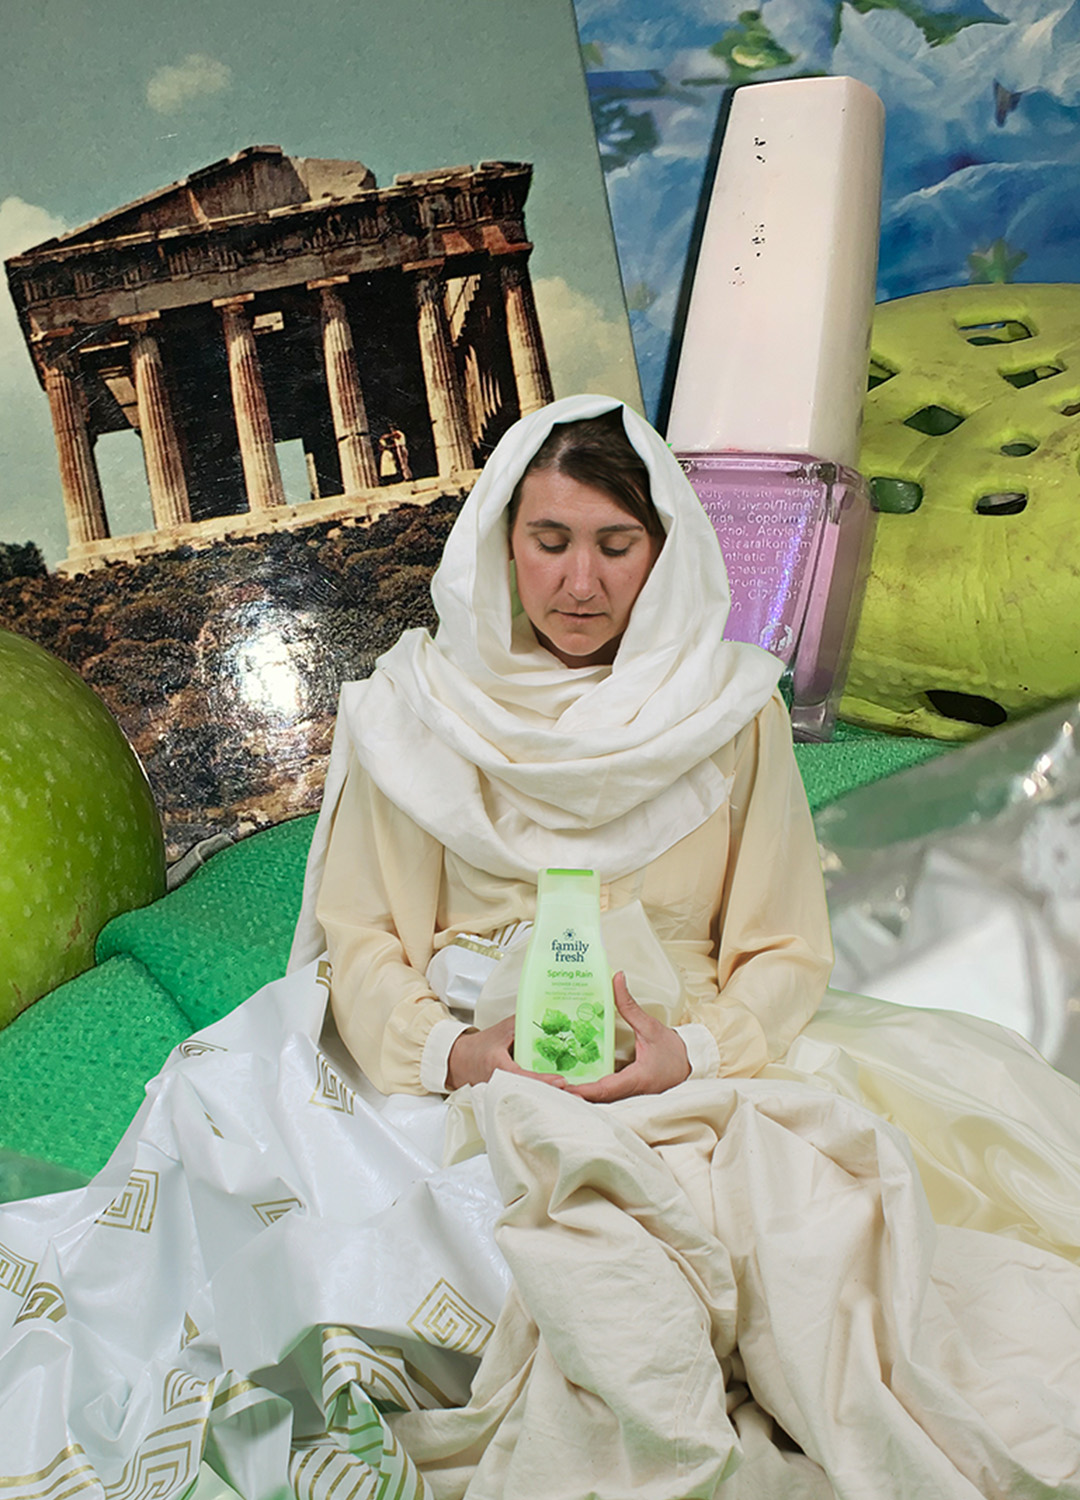 Fotokollage över olika föremål i ovanliga proportioner till varandra. En kvinna i ljus toga och sjal runt huvudet i förgrunden håller i en grön flaska med duschtvål. I barkunden ett enormt grönt äpple, ett hopskrynklat mintgrönt papper, ett vykort föreställande Akropolis, en gigantisk flaska med rosa nagellack och en starkt grön foppatoffla.  